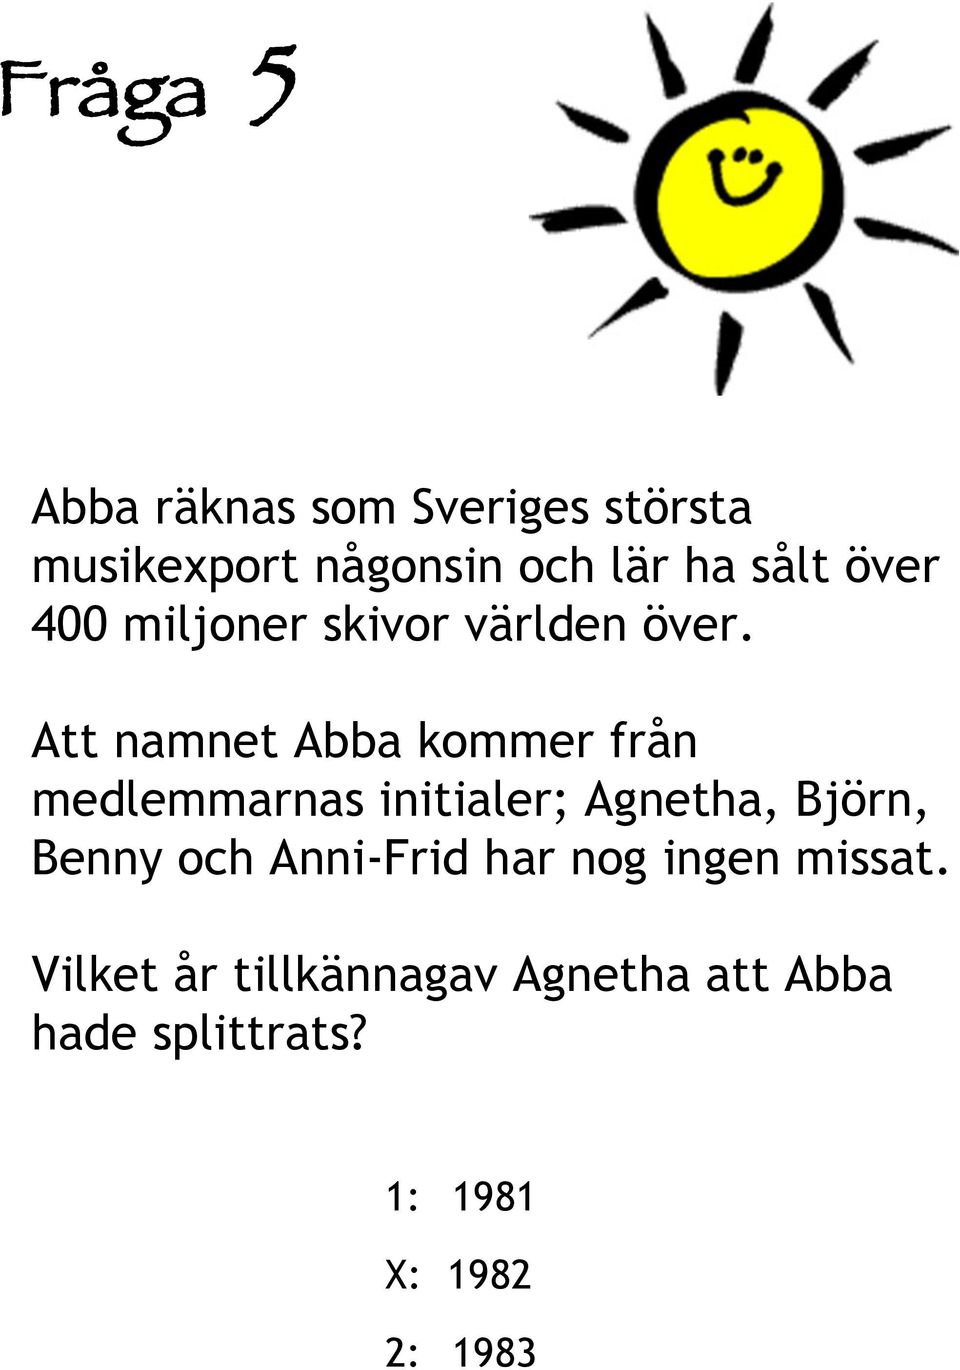 Att namnet Abba kommer från medlemmarnas initialer; Agnetha, Björn, Benny